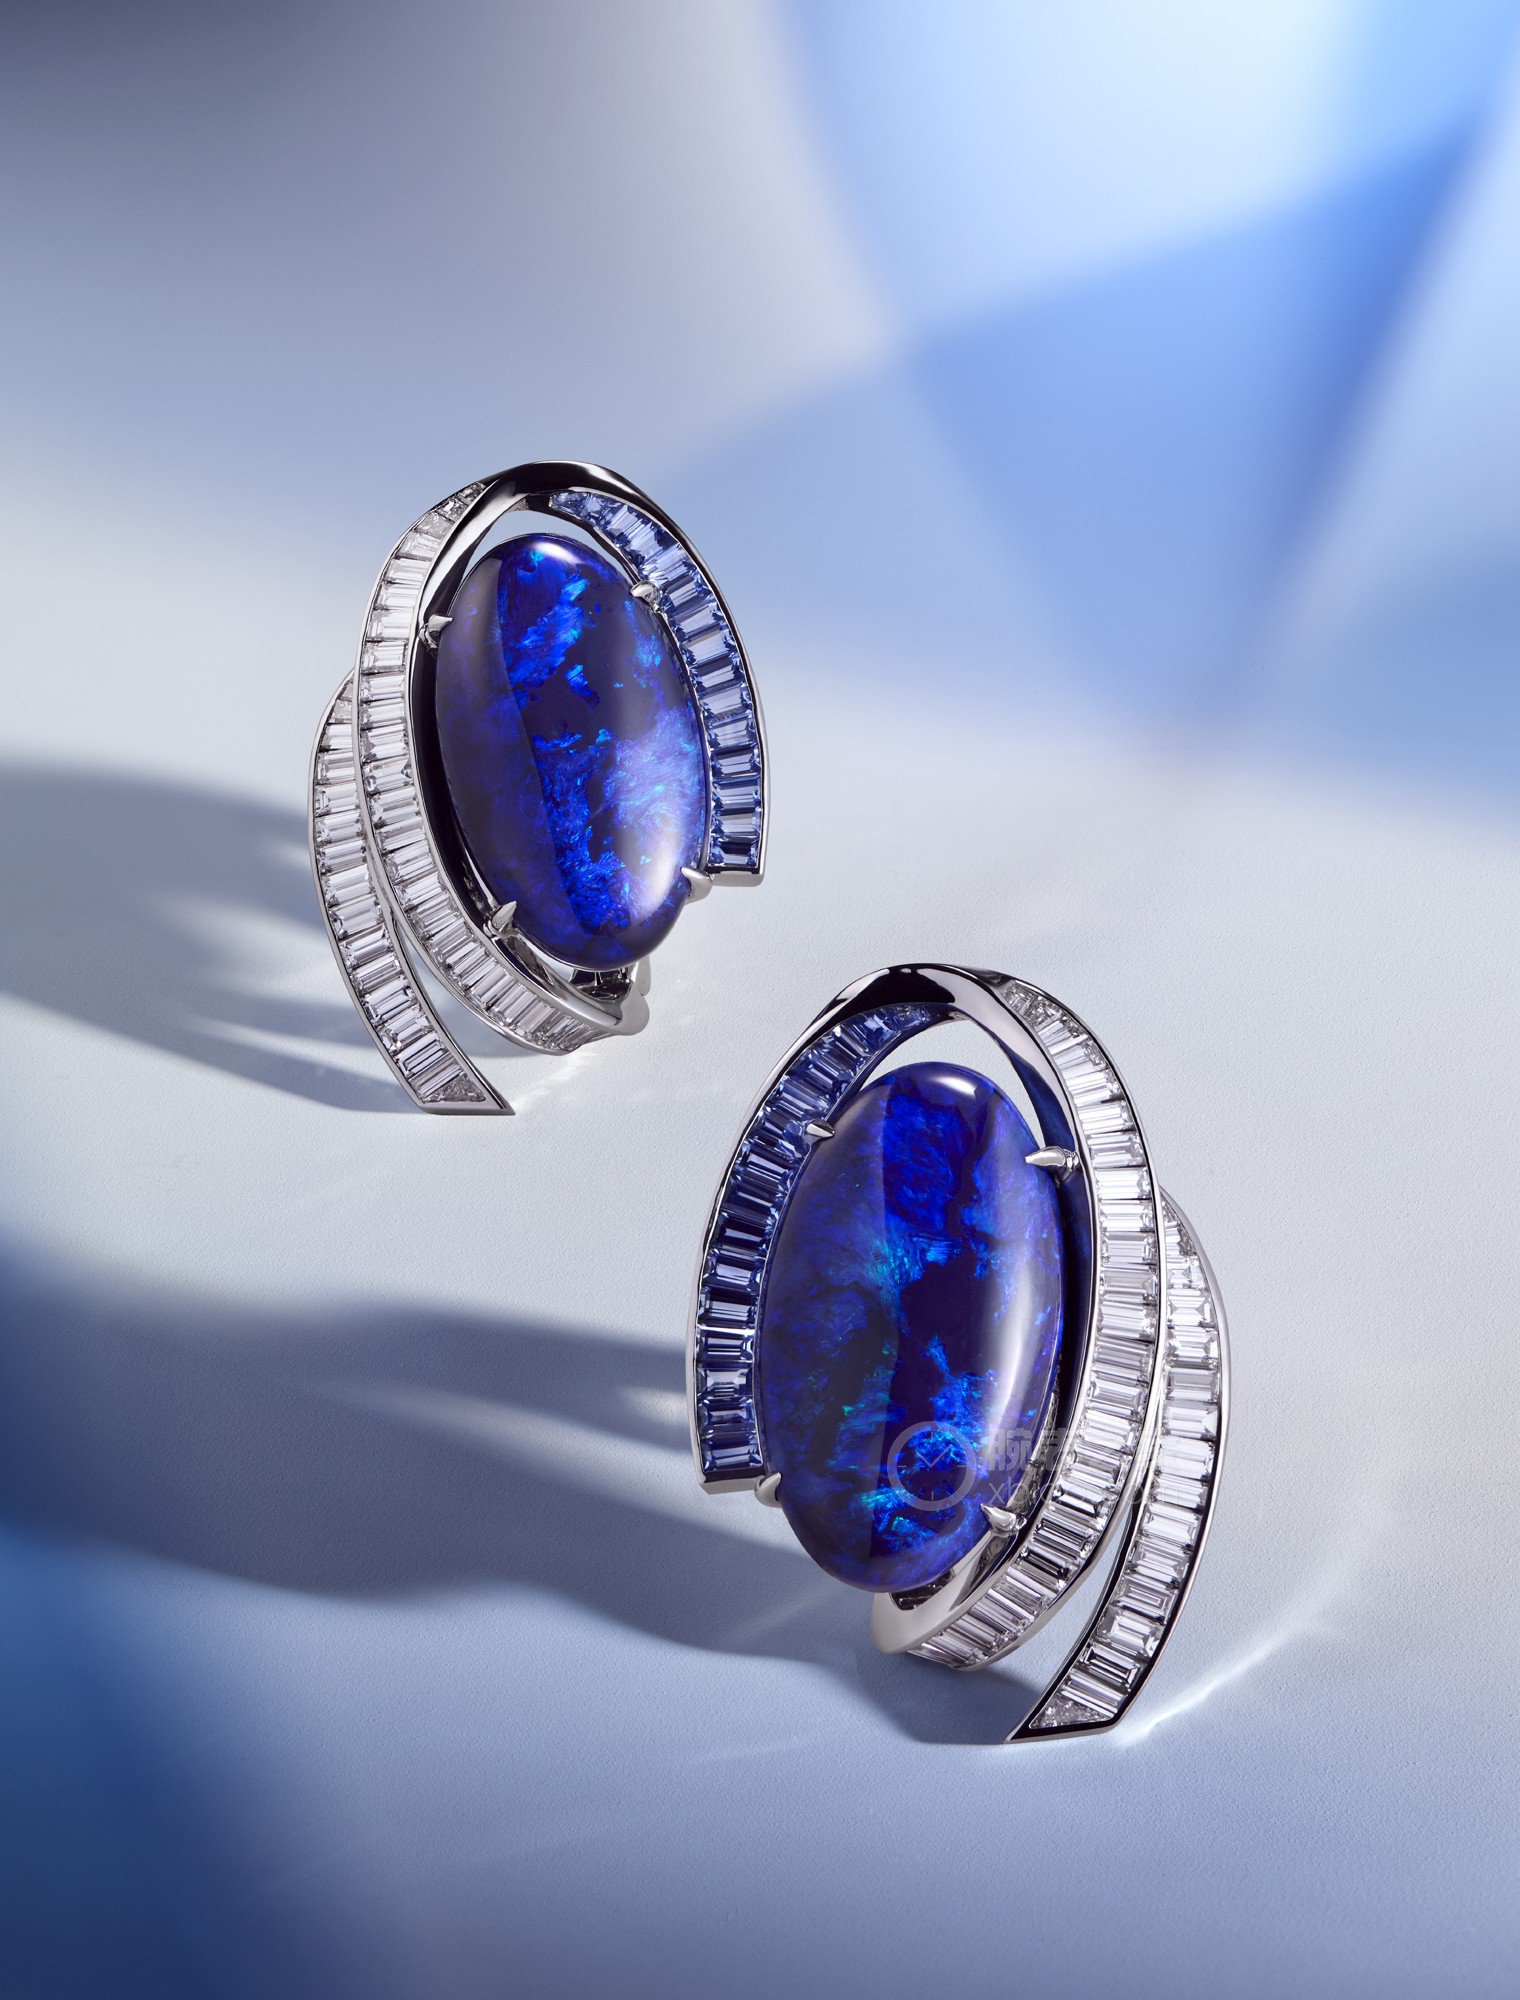 蒂芙尼BLUE BOOK高级珠宝铂金镶嵌椭圆形凸面黑琥珀、狭长形蓝宝石及狭长形钻石耳环耳饰